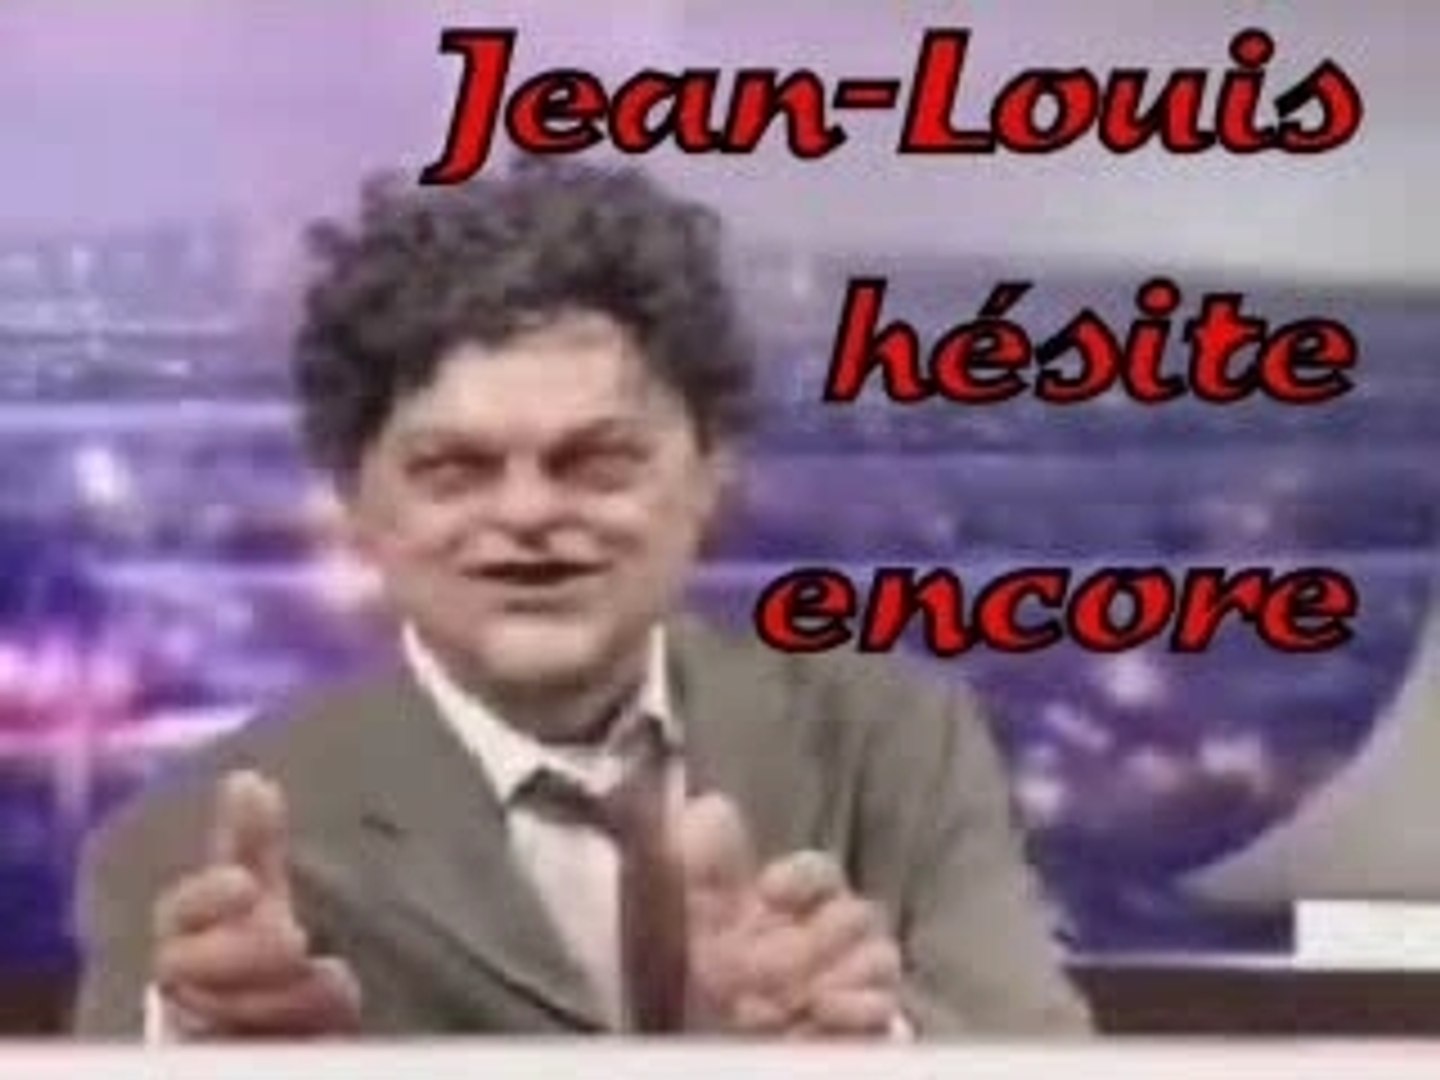 Jean-Louis hésite encore ... - Vidéo Dailymotion